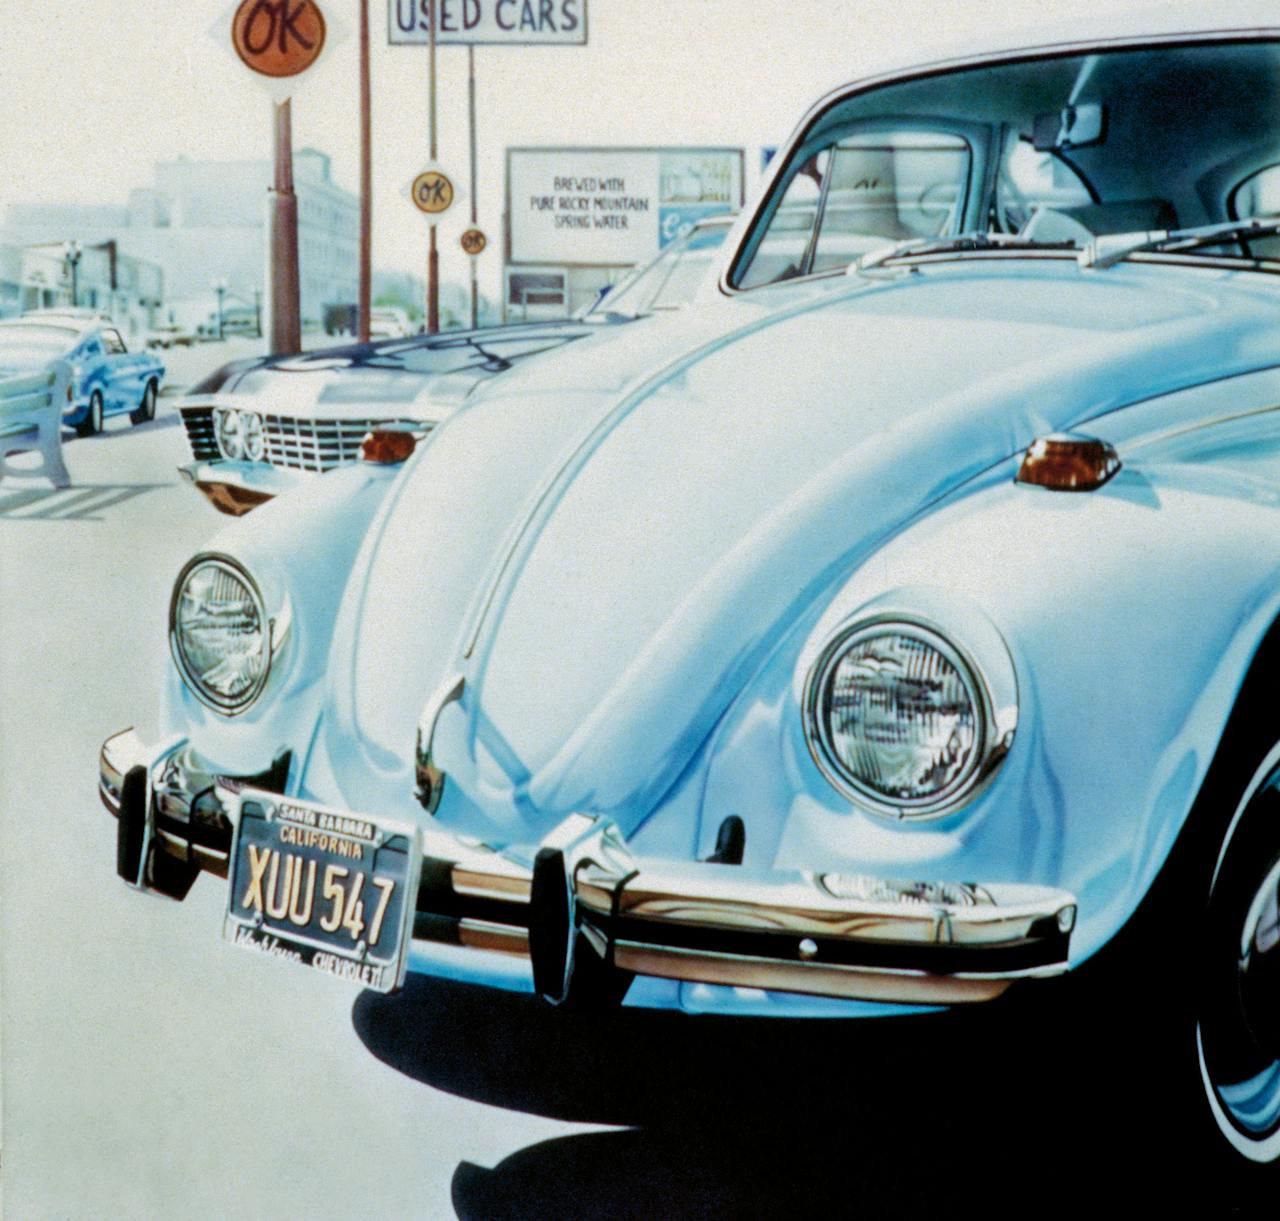 Don Eddy: ‘Volkswagen and OK used cars’, 1971. Werk van Eddy is volgende maand te zien in de Kunsthal.